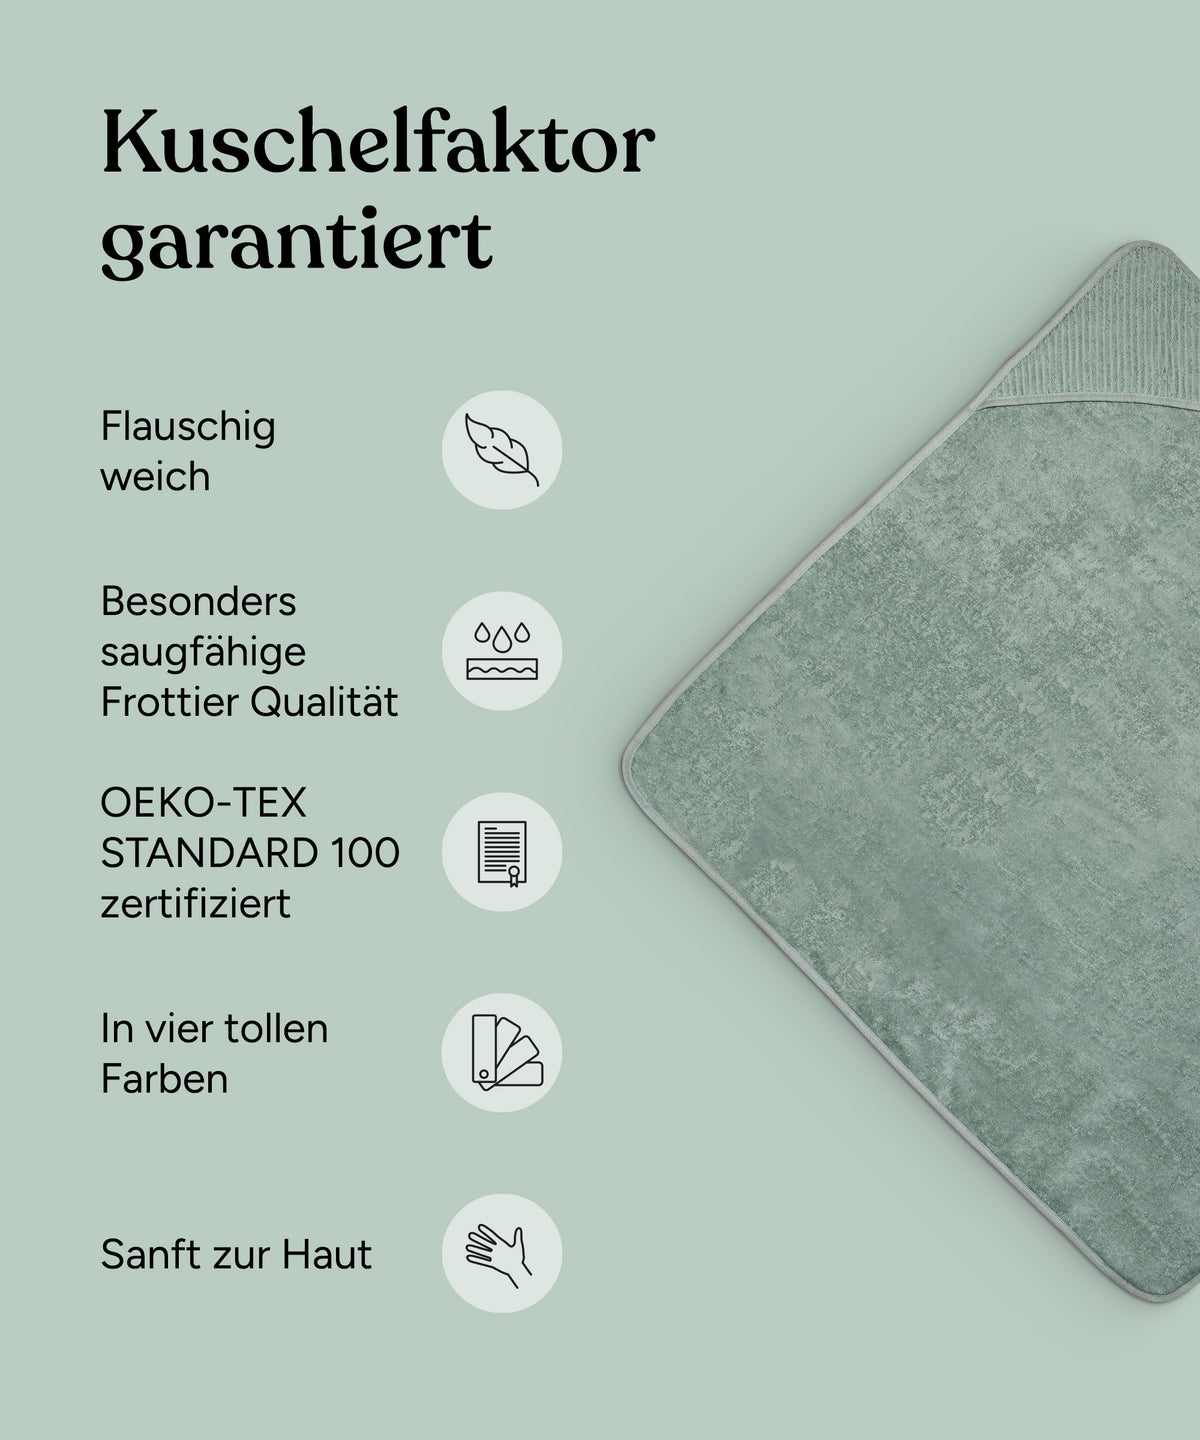 Vorteile Kapuzenhandtuch: Flauschig weich, besonders saugfähige Frottier Qualität, Oeko-Tex Standard 100 zertifiziert, in vier tollen Farben, sanft zur Haut.